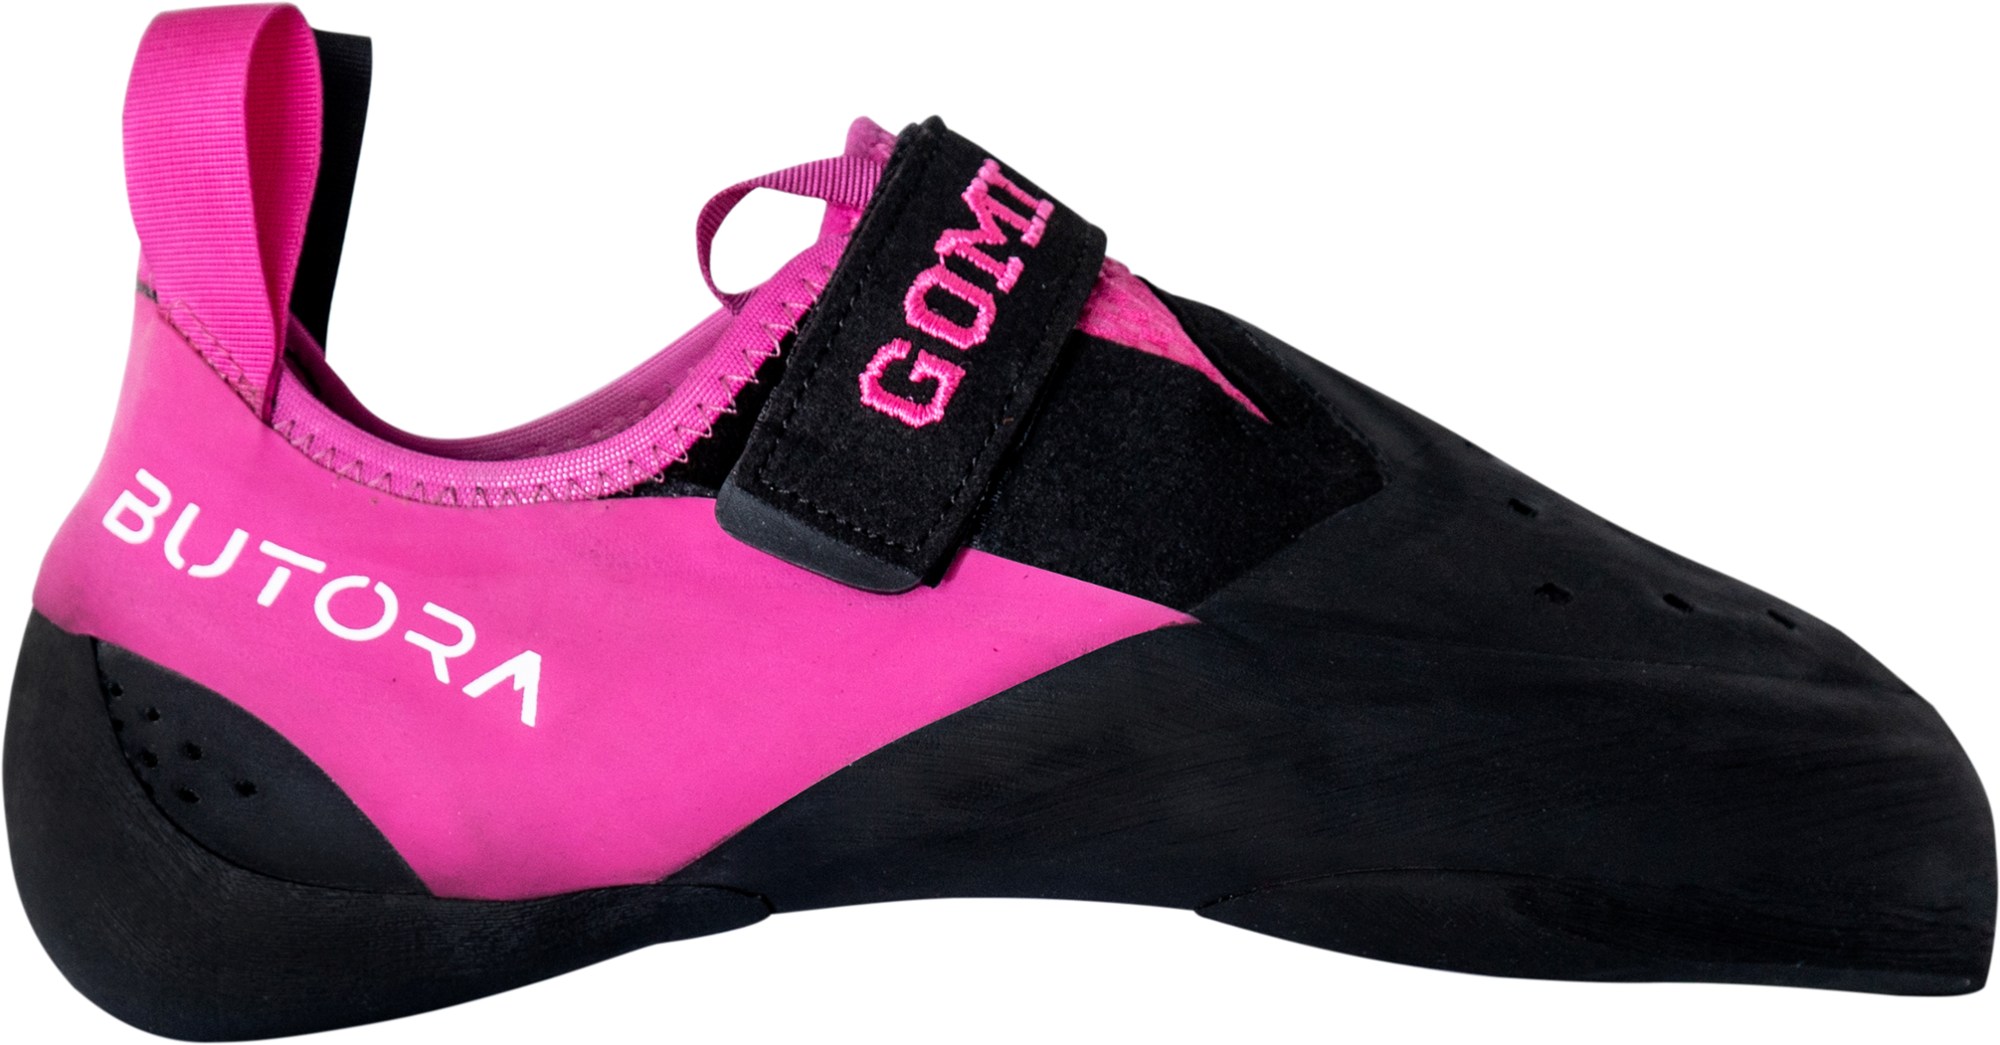 Обувь для скалолазания Gomi (узкого кроя) Butora, розовый